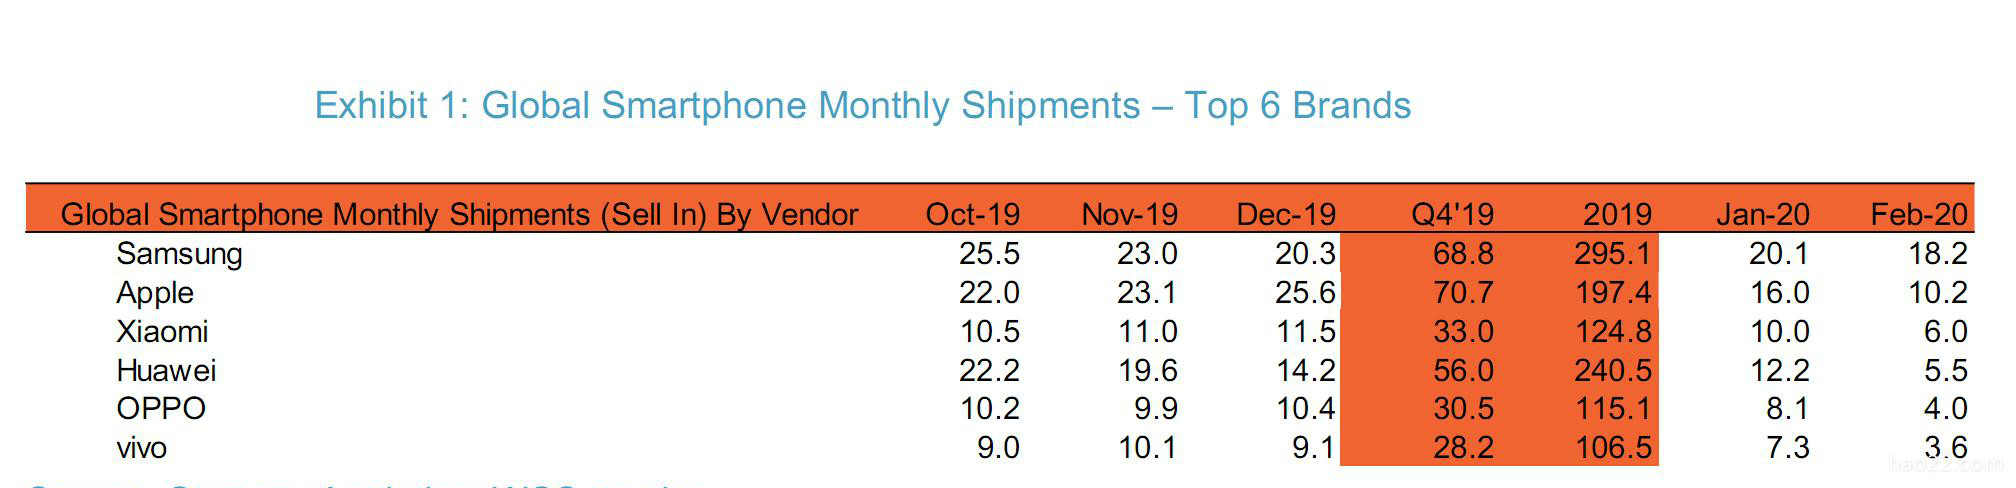 最新销量排行 小米曾短超华为排全球第三 iPhone SE或孤独求败 